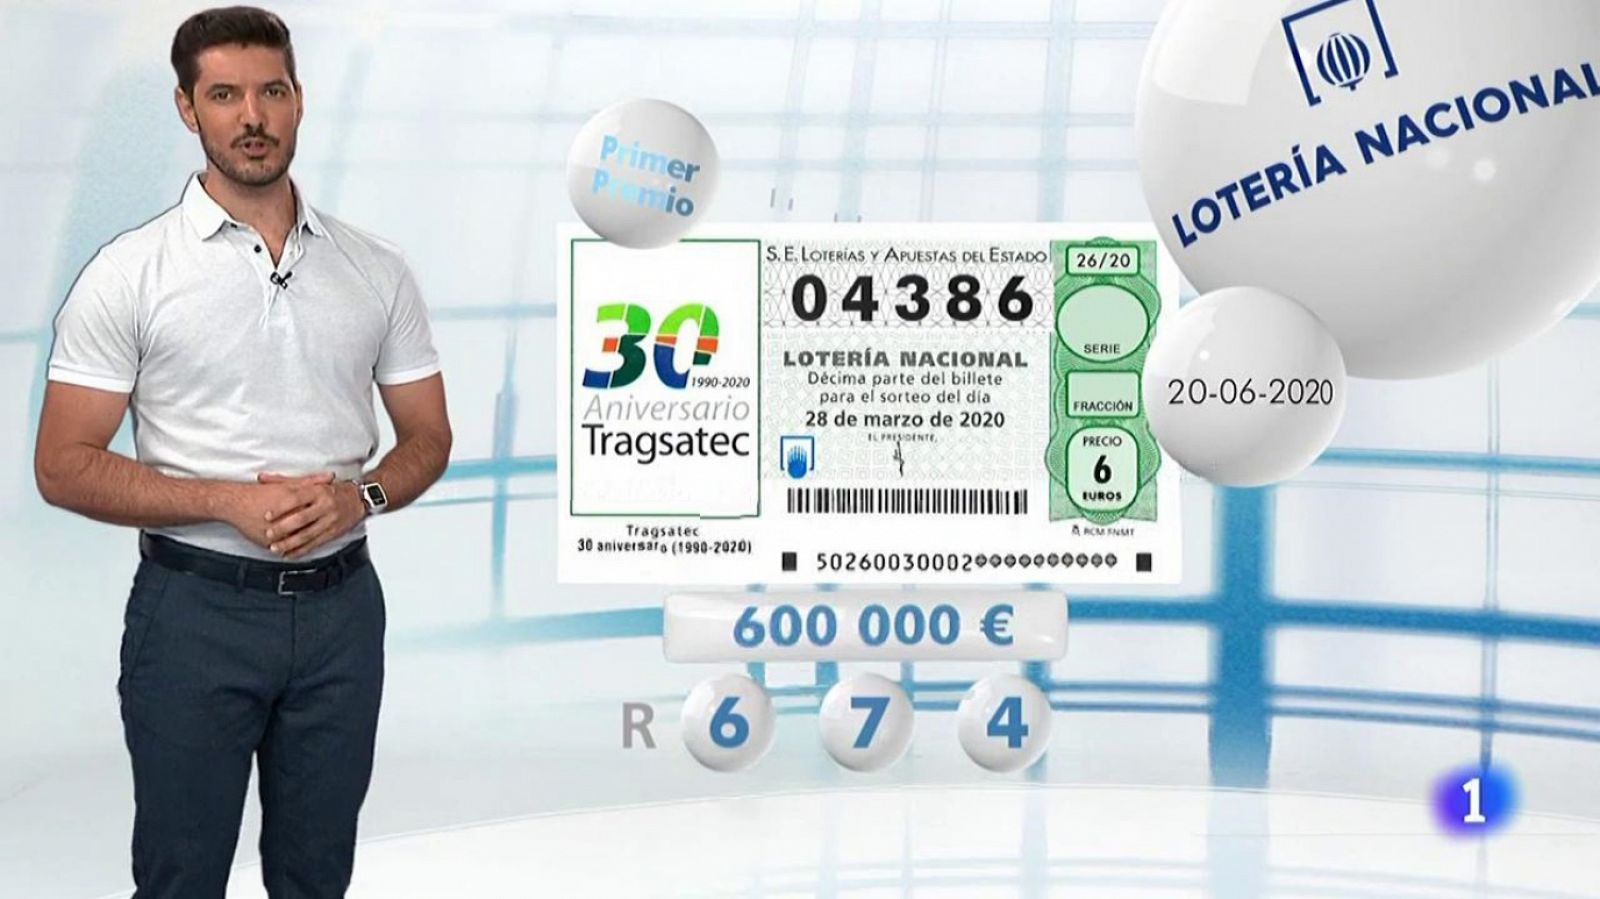 Lotería Nacional - 20/06/20 - RTVE.es